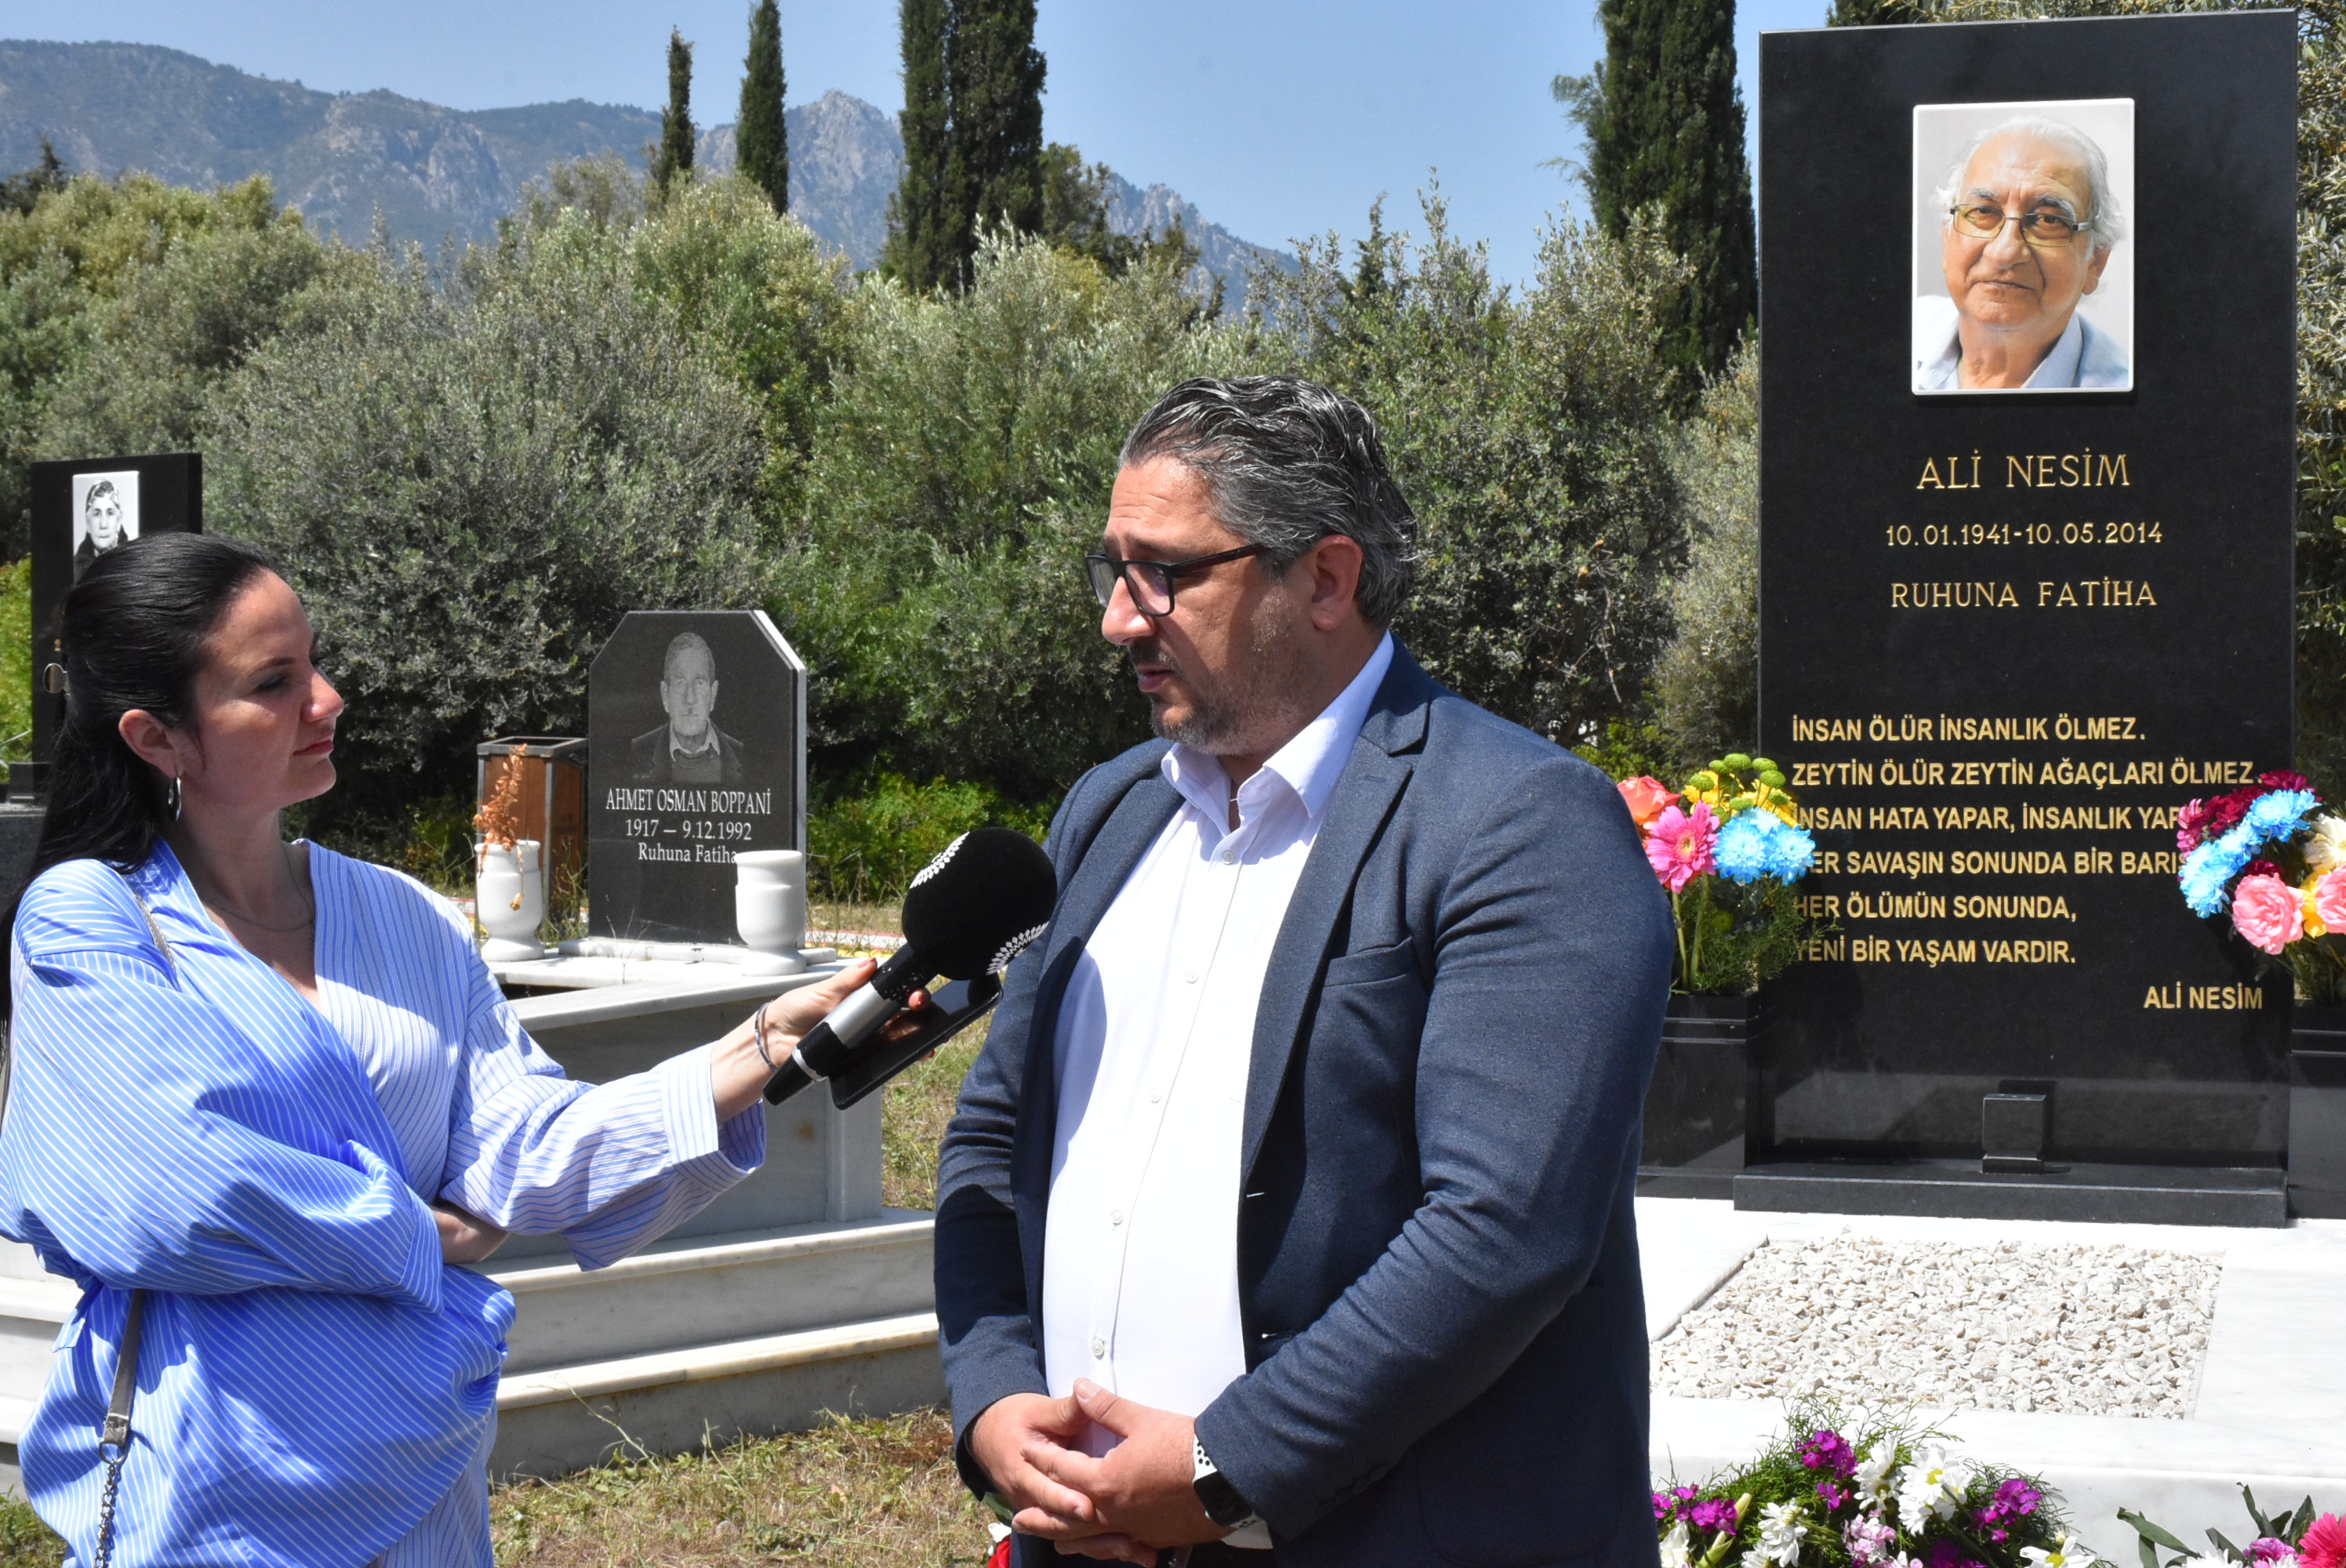 Şair ve araştırmacı yazar Ali Nesim, Zeytinlik Mezarlığı’ndaki kabri başında anıldı